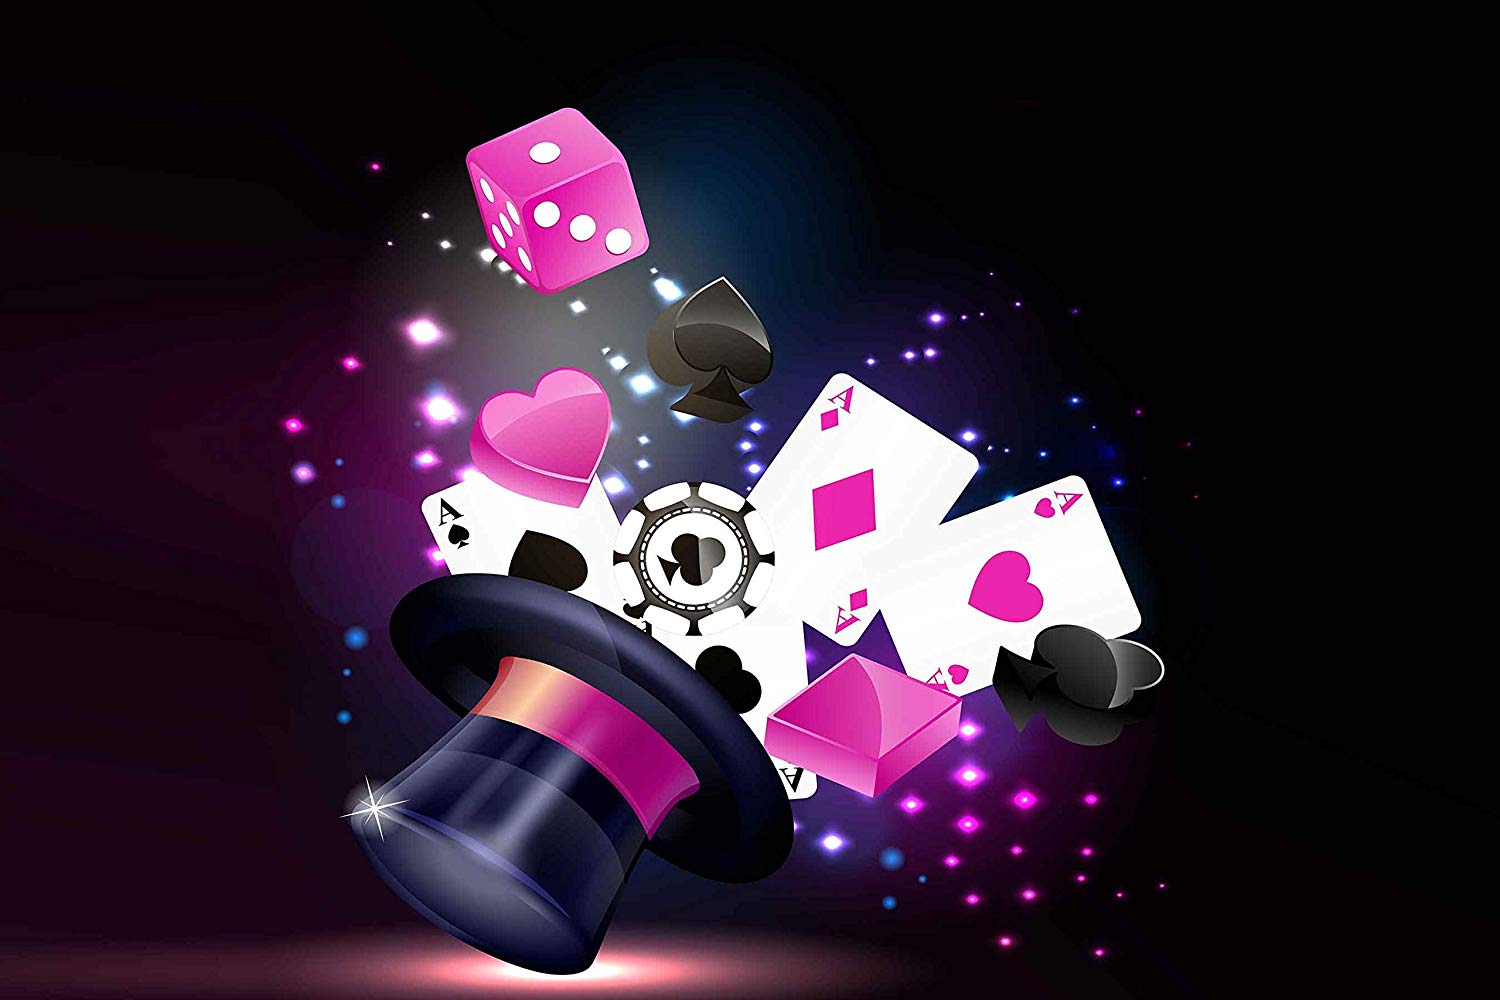 Magic themes. Магик шоу. Заставка game show. Magic show logo. Situs Poker IDN terbaru dan Terpercaya 2020.